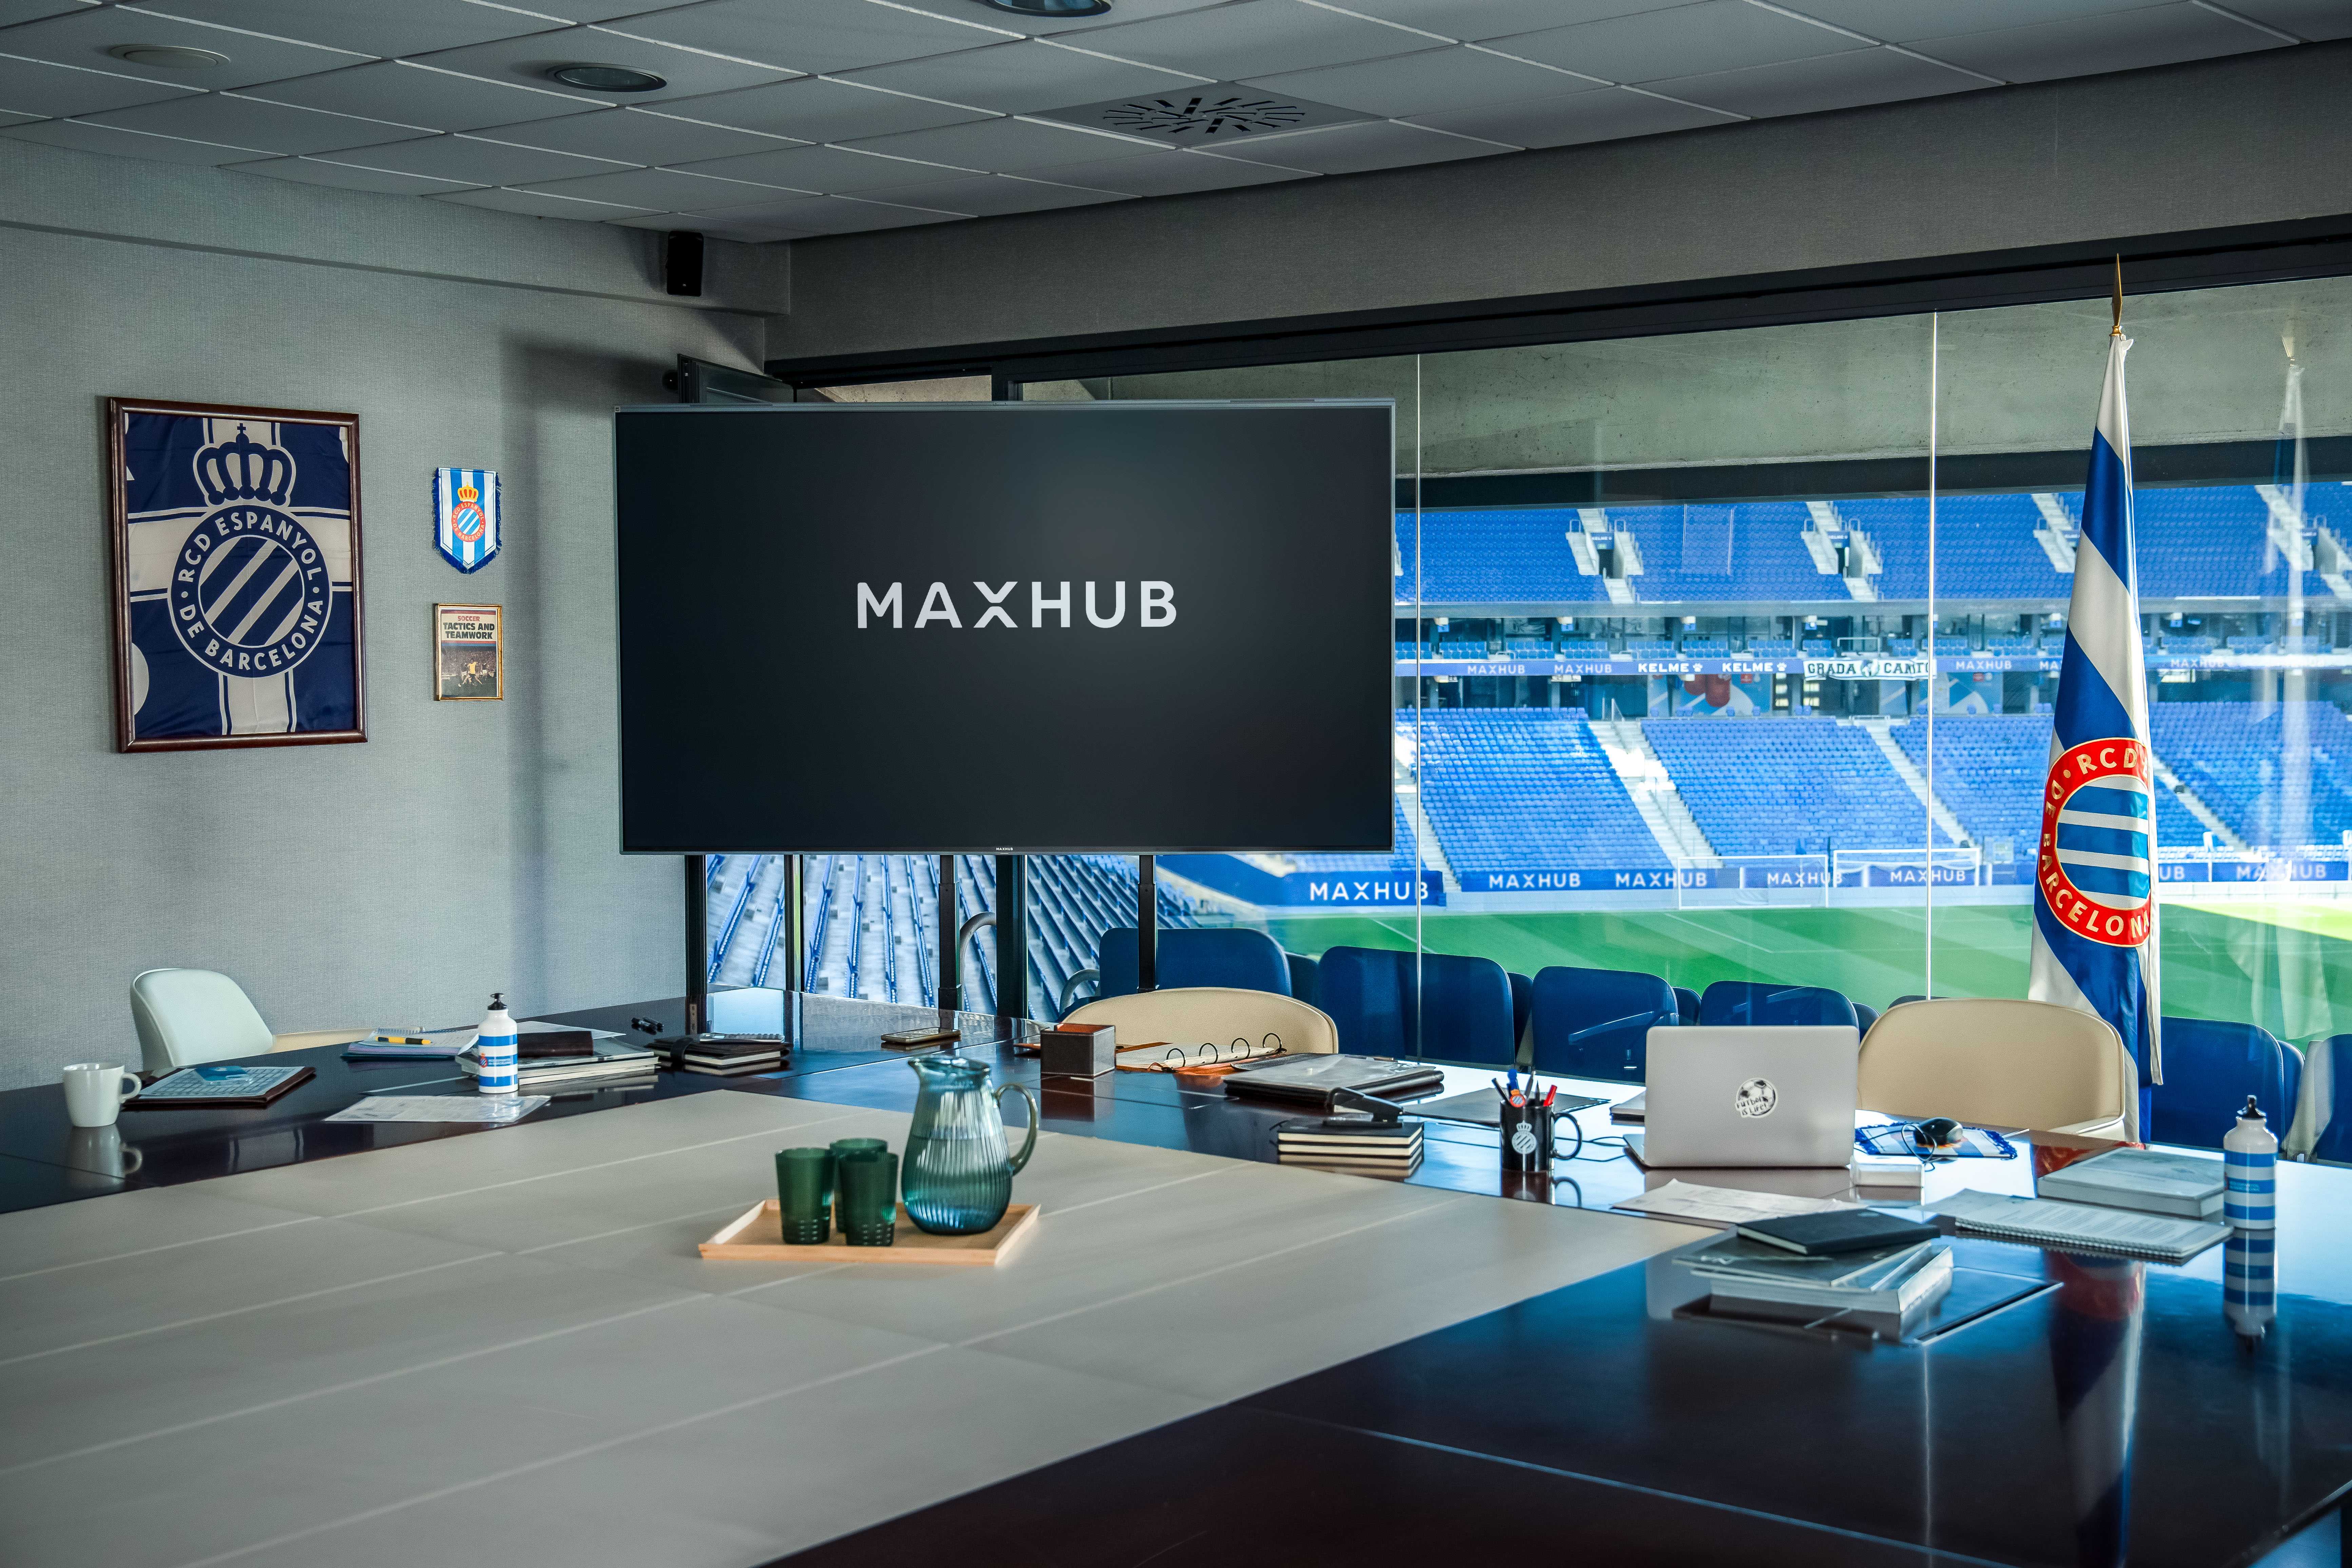 MAXHUB成为俱乐部智能会议设备和商业显示设备的独家供应商